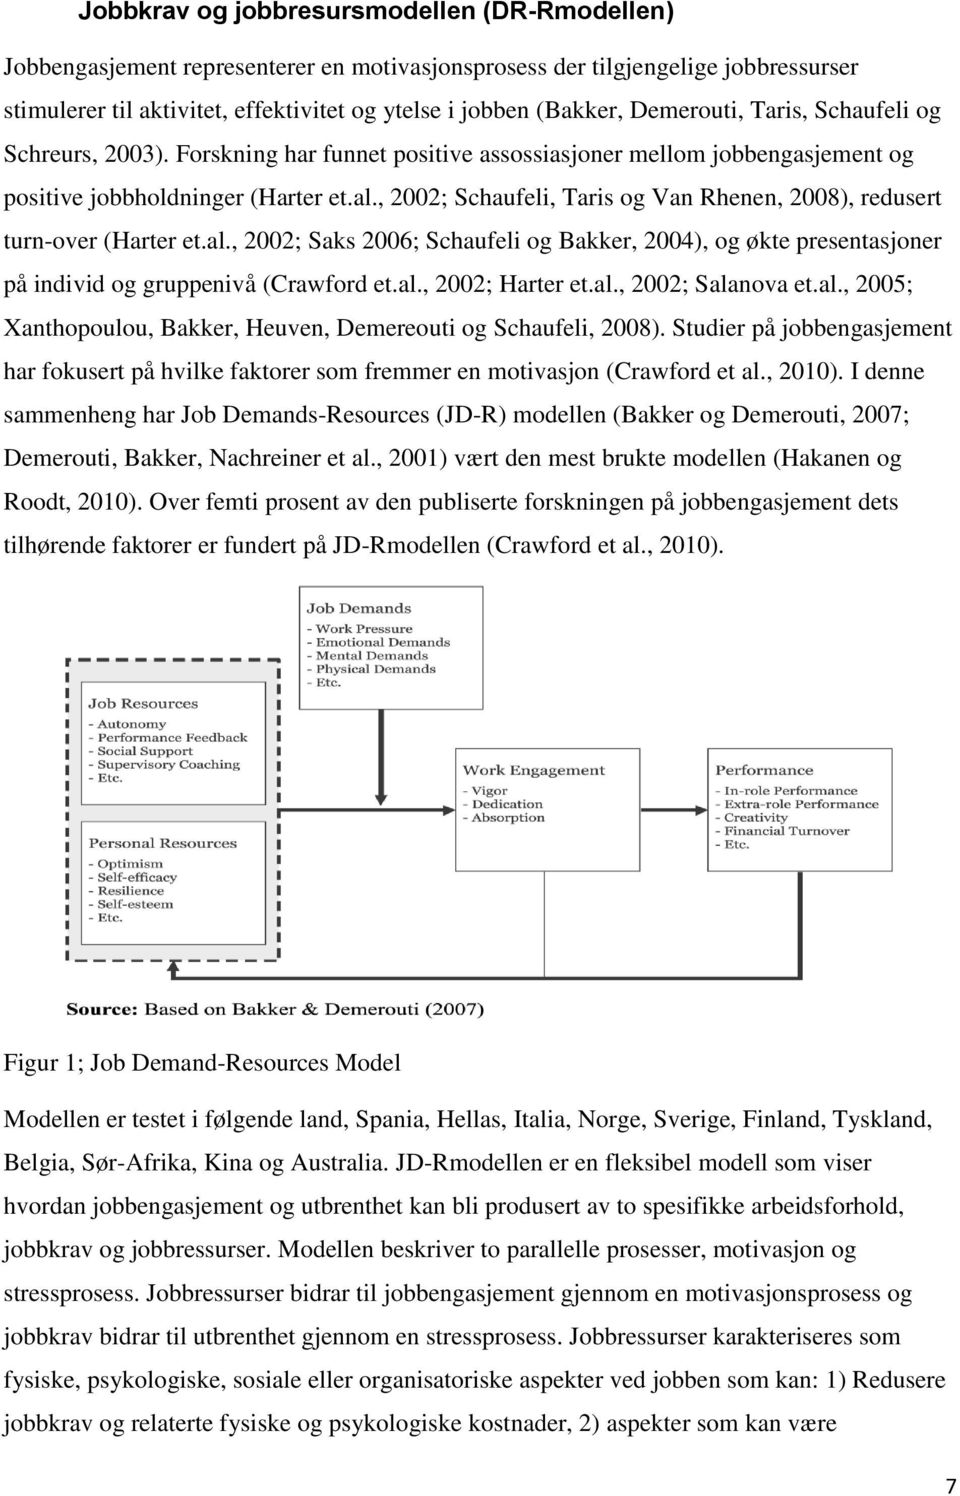 , 2002; Schaufeli, Taris og Van Rhenen, 2008), redusert turn-over (Harter et.al., 2002; Saks 2006; Schaufeli og Bakker, 2004), og økte presentasjoner på individ og gruppenivå (Crawford et.al., 2002; Harter et.